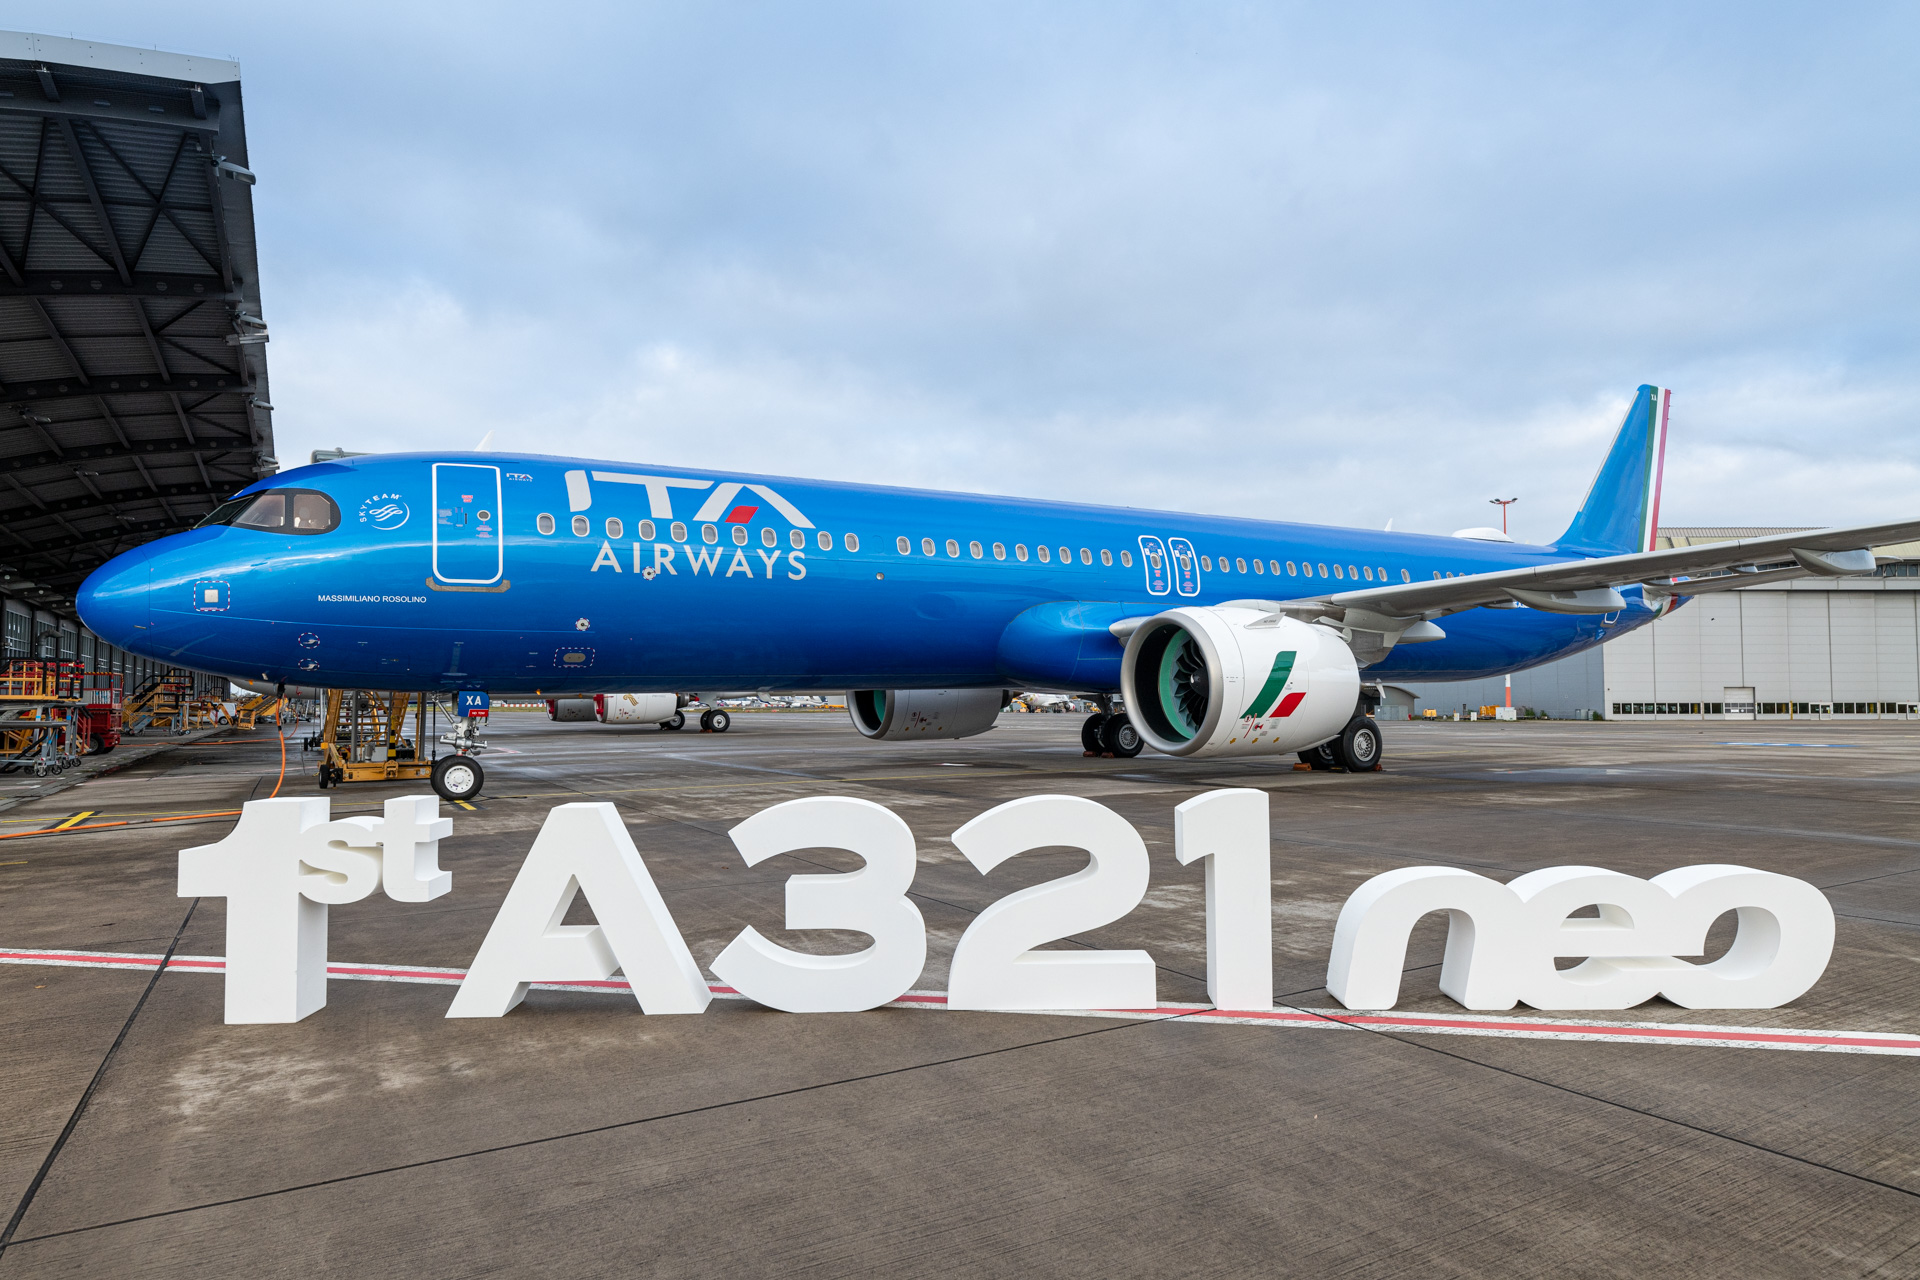 Il taglio del nastro ad Amburgo e il volo per Fiumicino: consegnato a ITA il primo A321neo